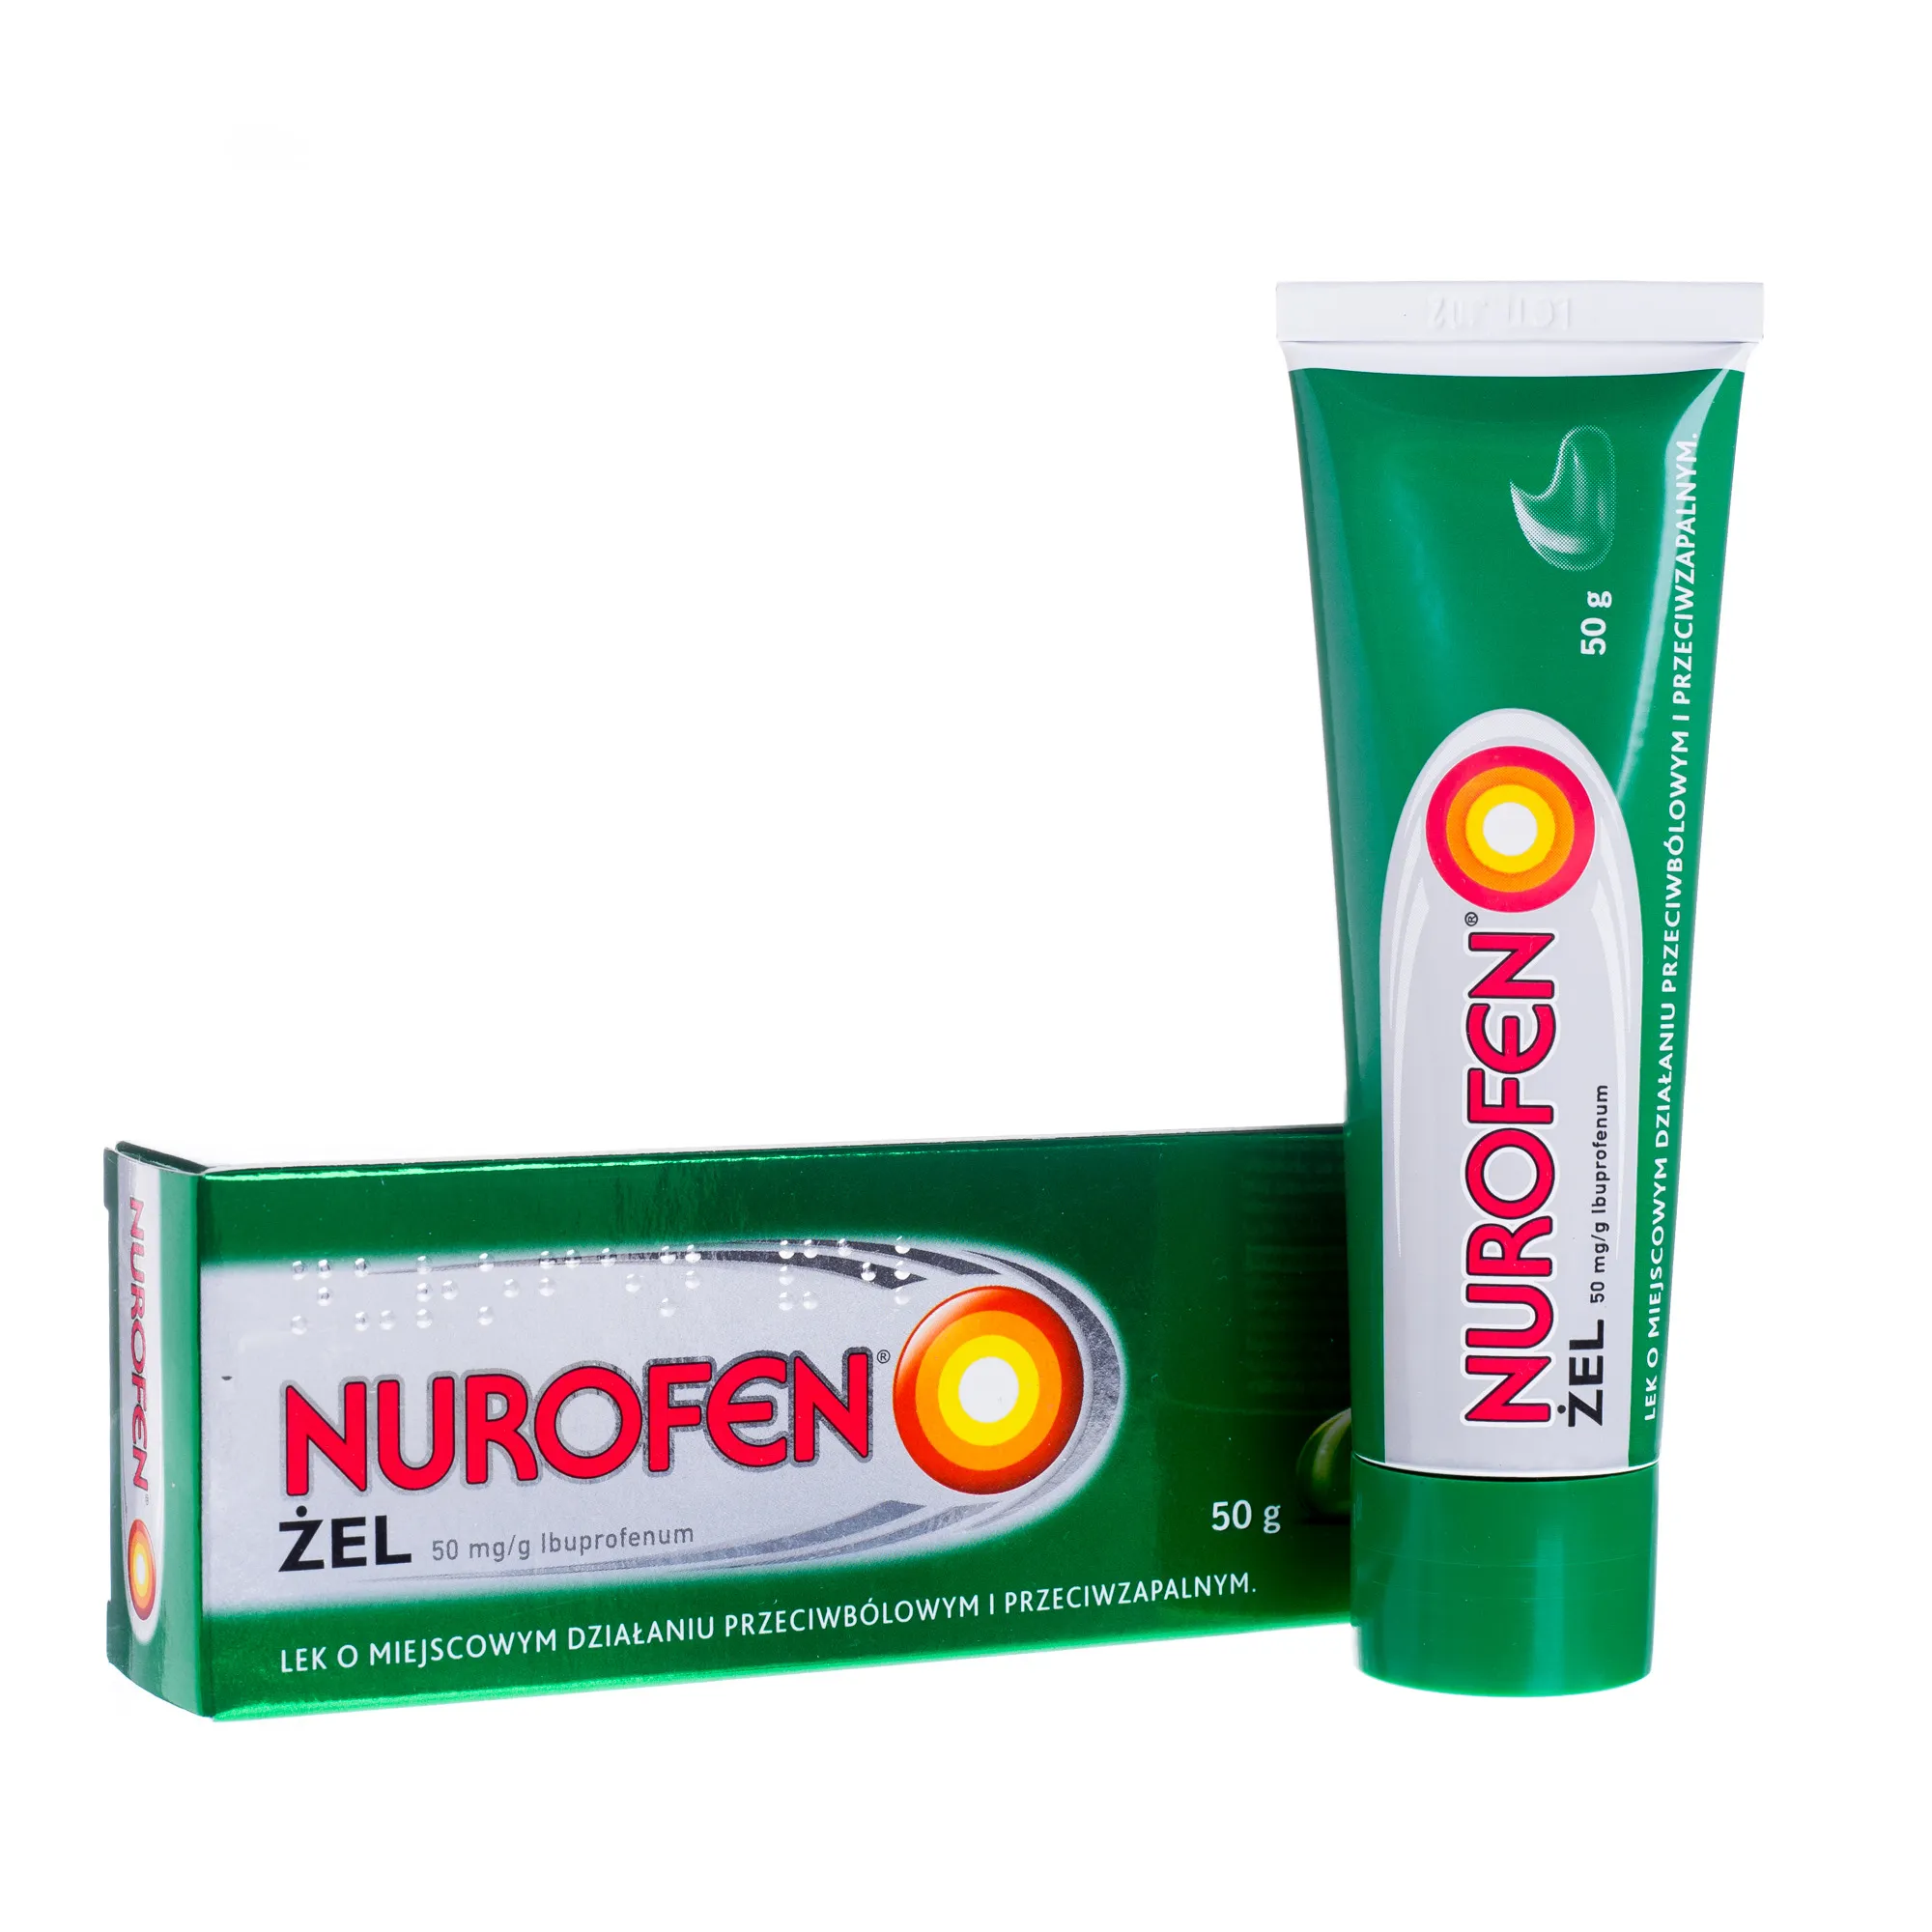 Nurofen żel 50mg/g, lek o miejscowym działaniu przeciwbólowym i przeciwzapalnym, 50 g